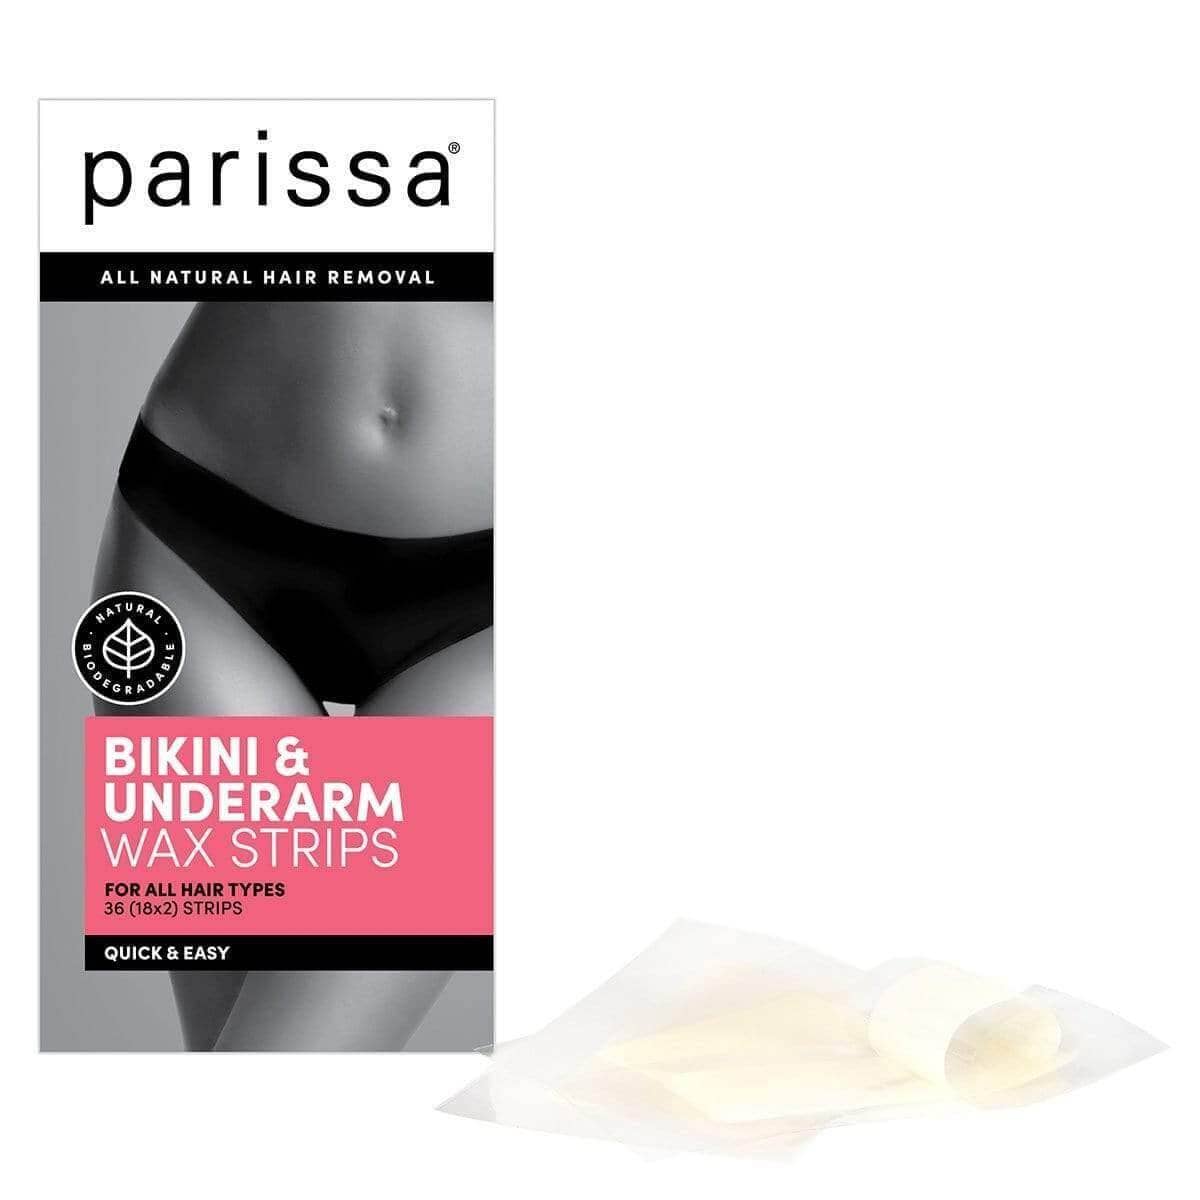 Bikini & Underarm Wax Strips Kits Parissa 